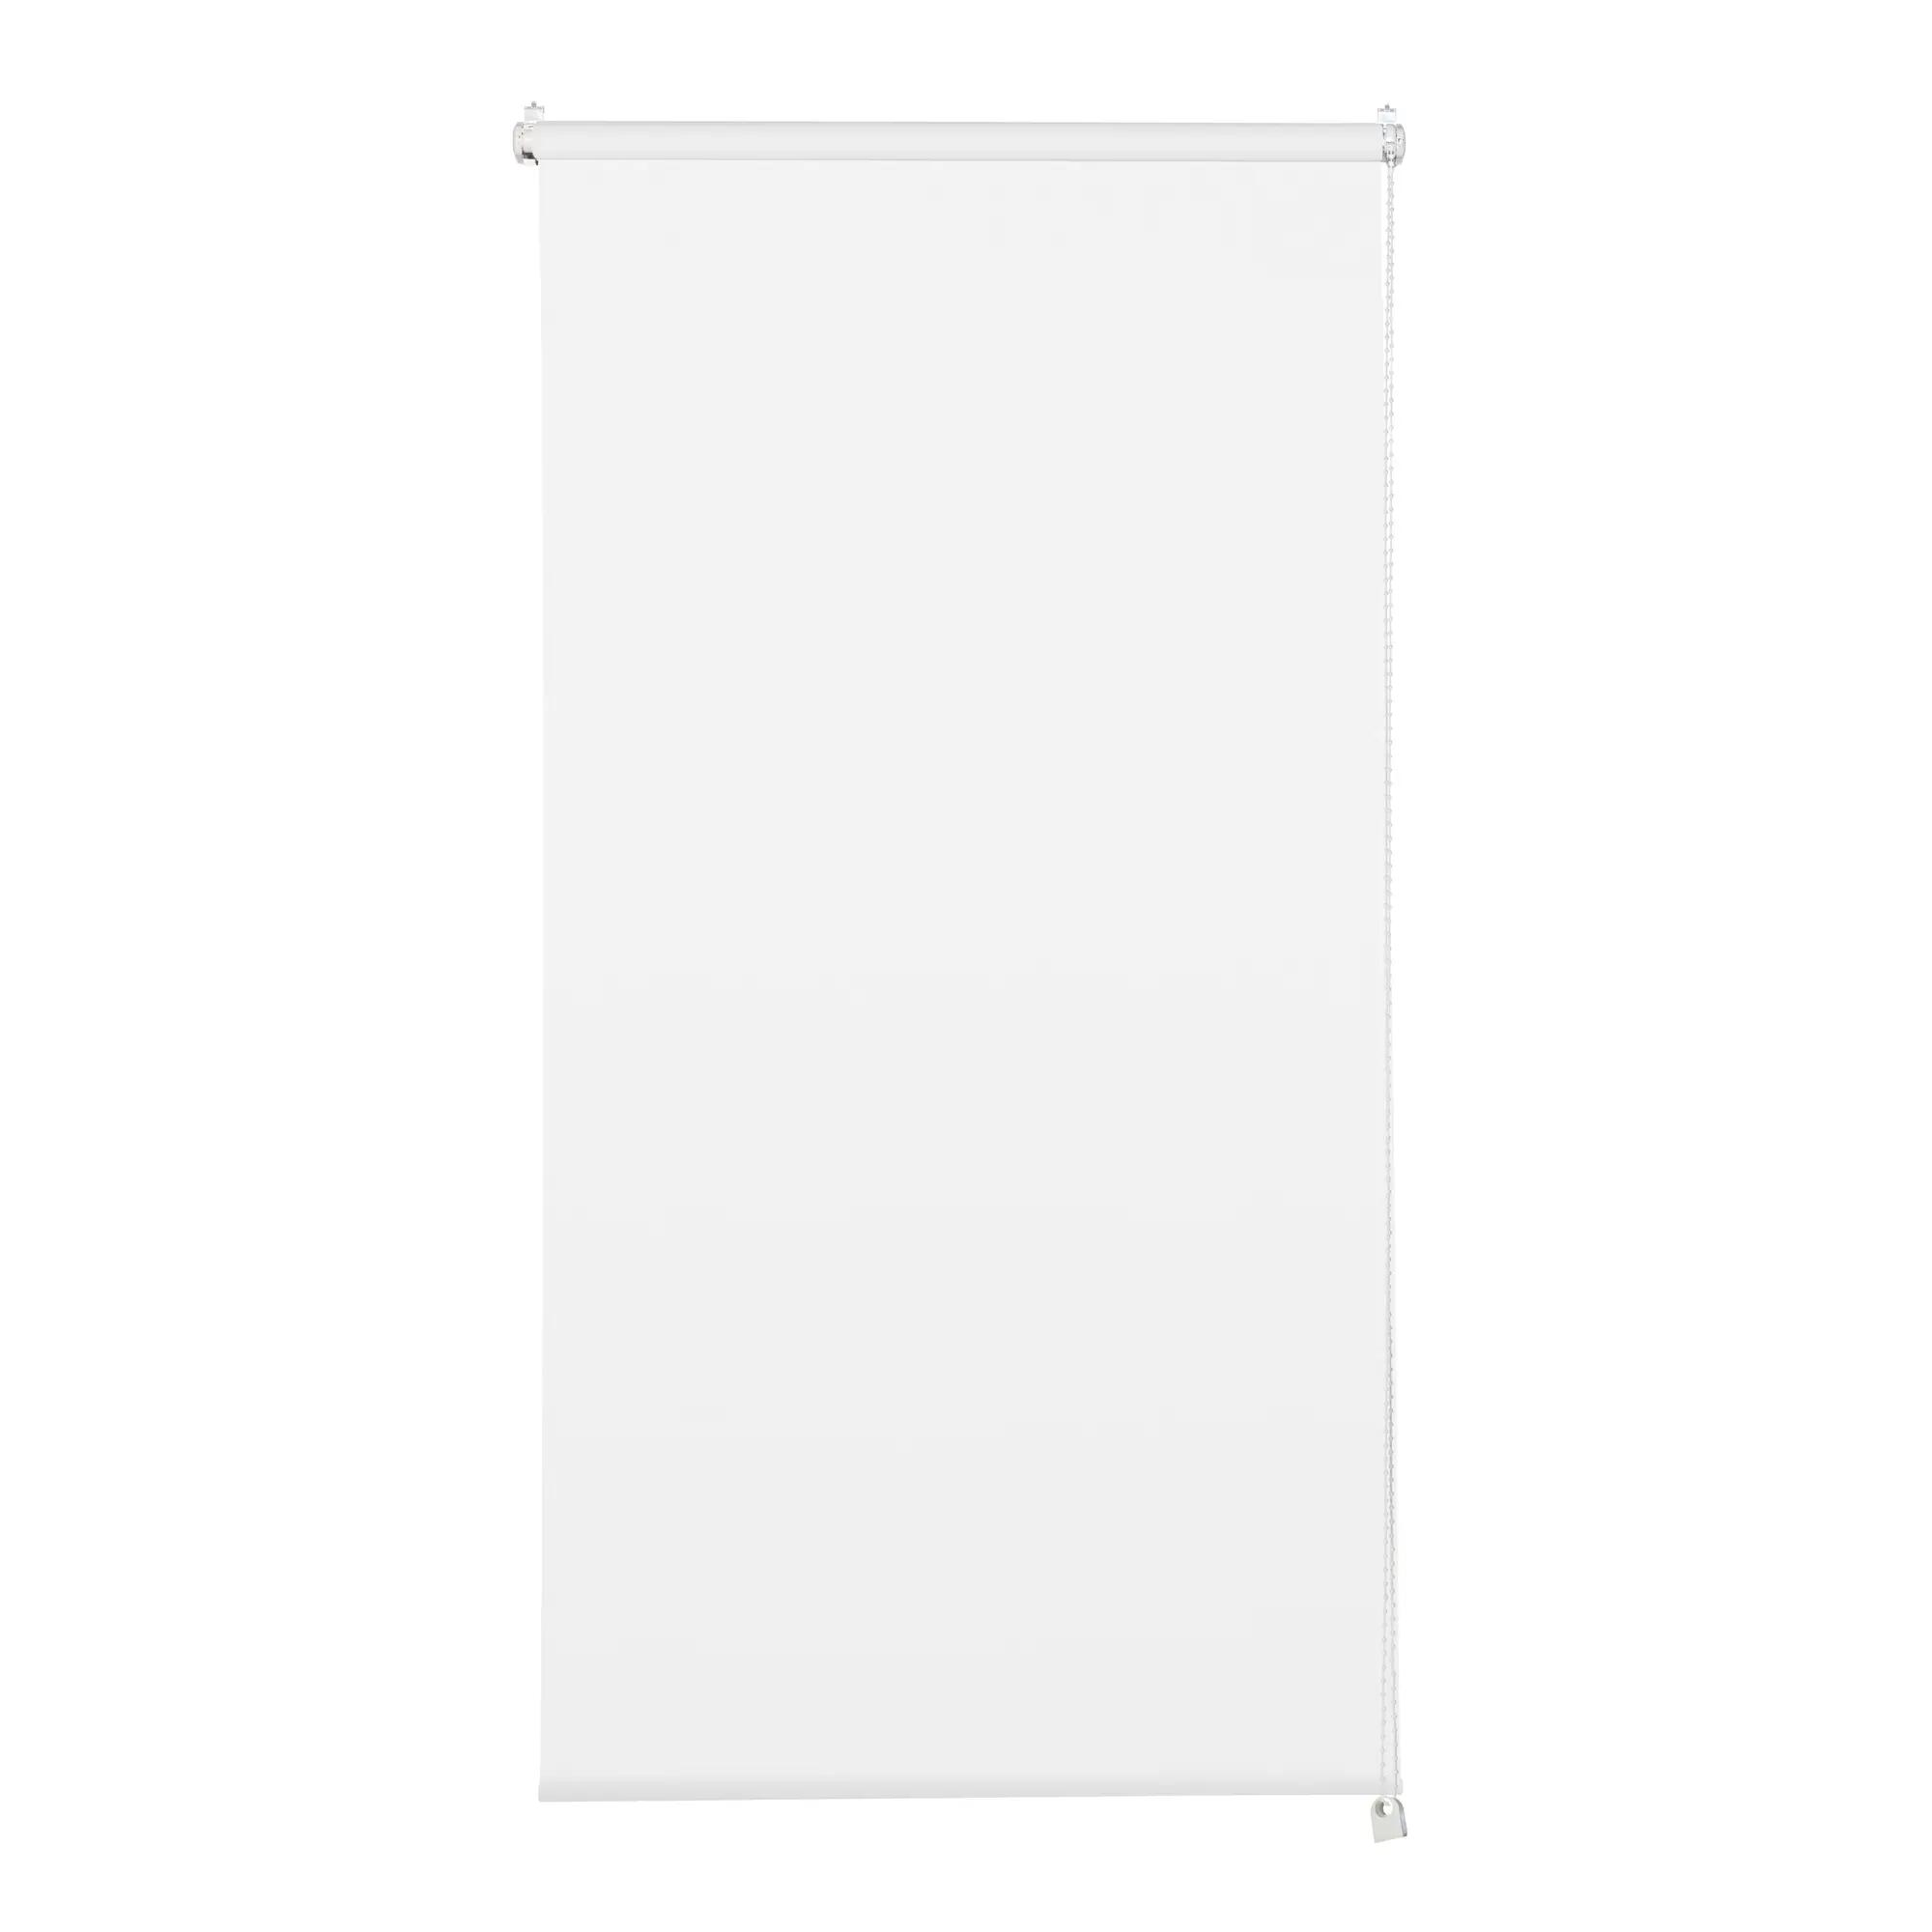 Tenda a rullo filtrante INSPIRE Screen bianca 165 x 250 cm - 4